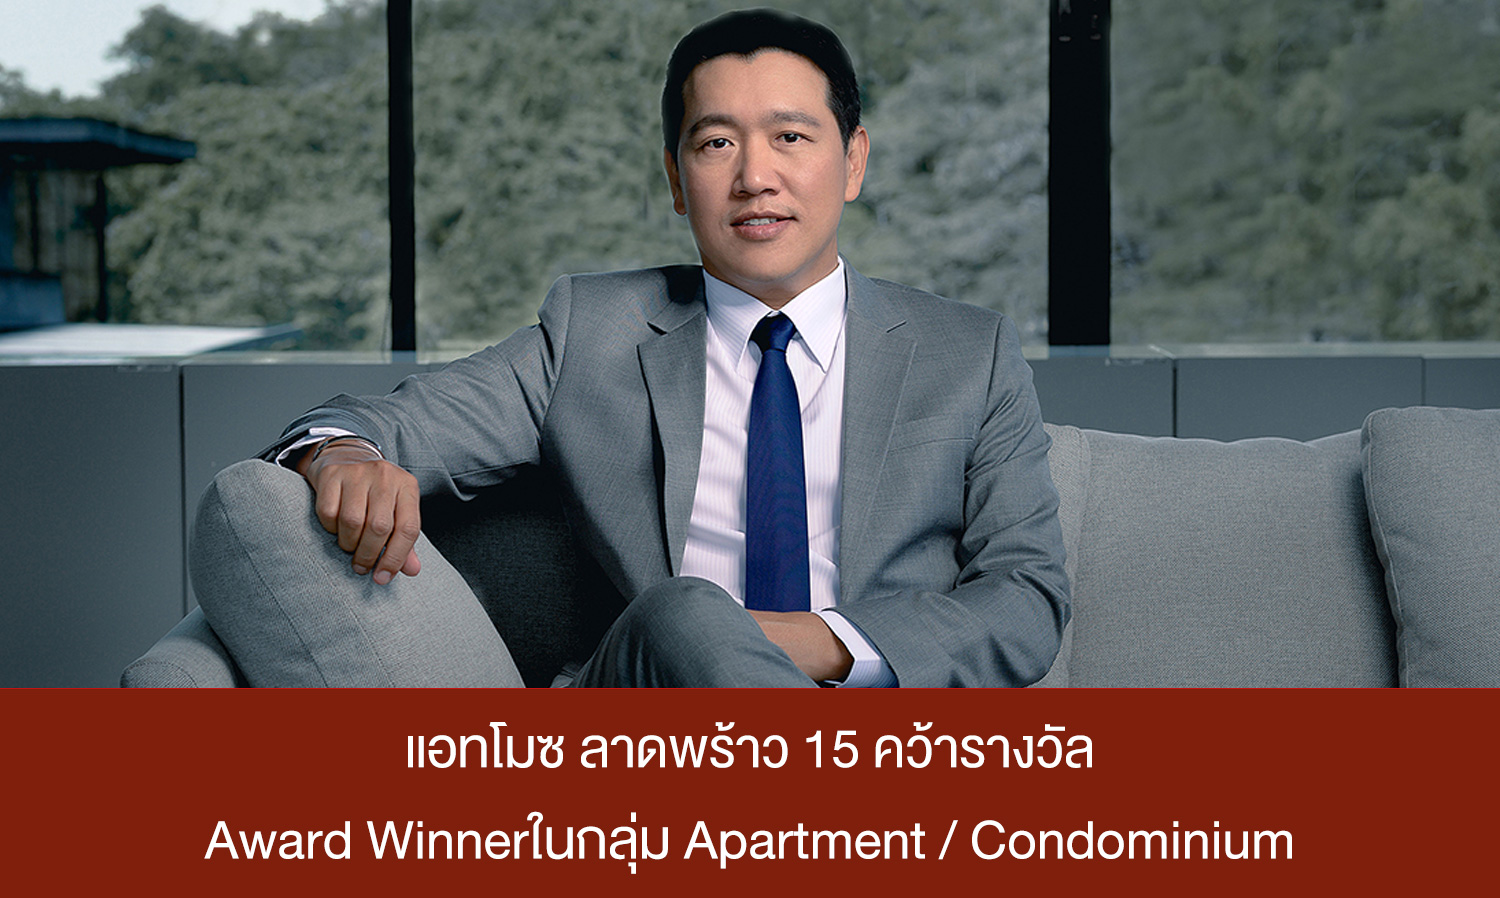 แอทโมซ ลาดพร้าว 15 (Atmoz Ladprao 15) คว้ารางวัล Award Winnerในกลุ่ม Apartment / Condominium